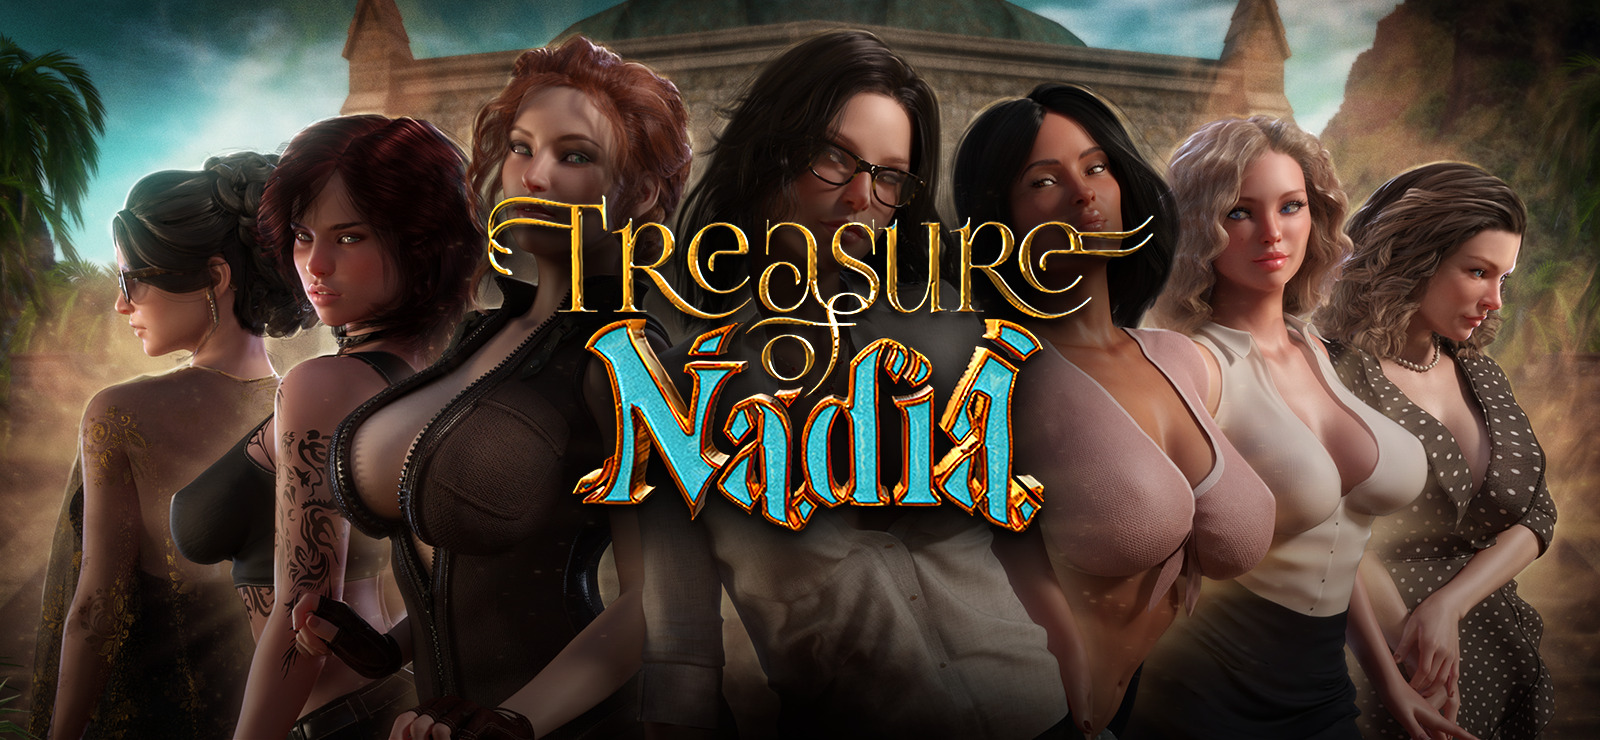 Treasures of nadia download